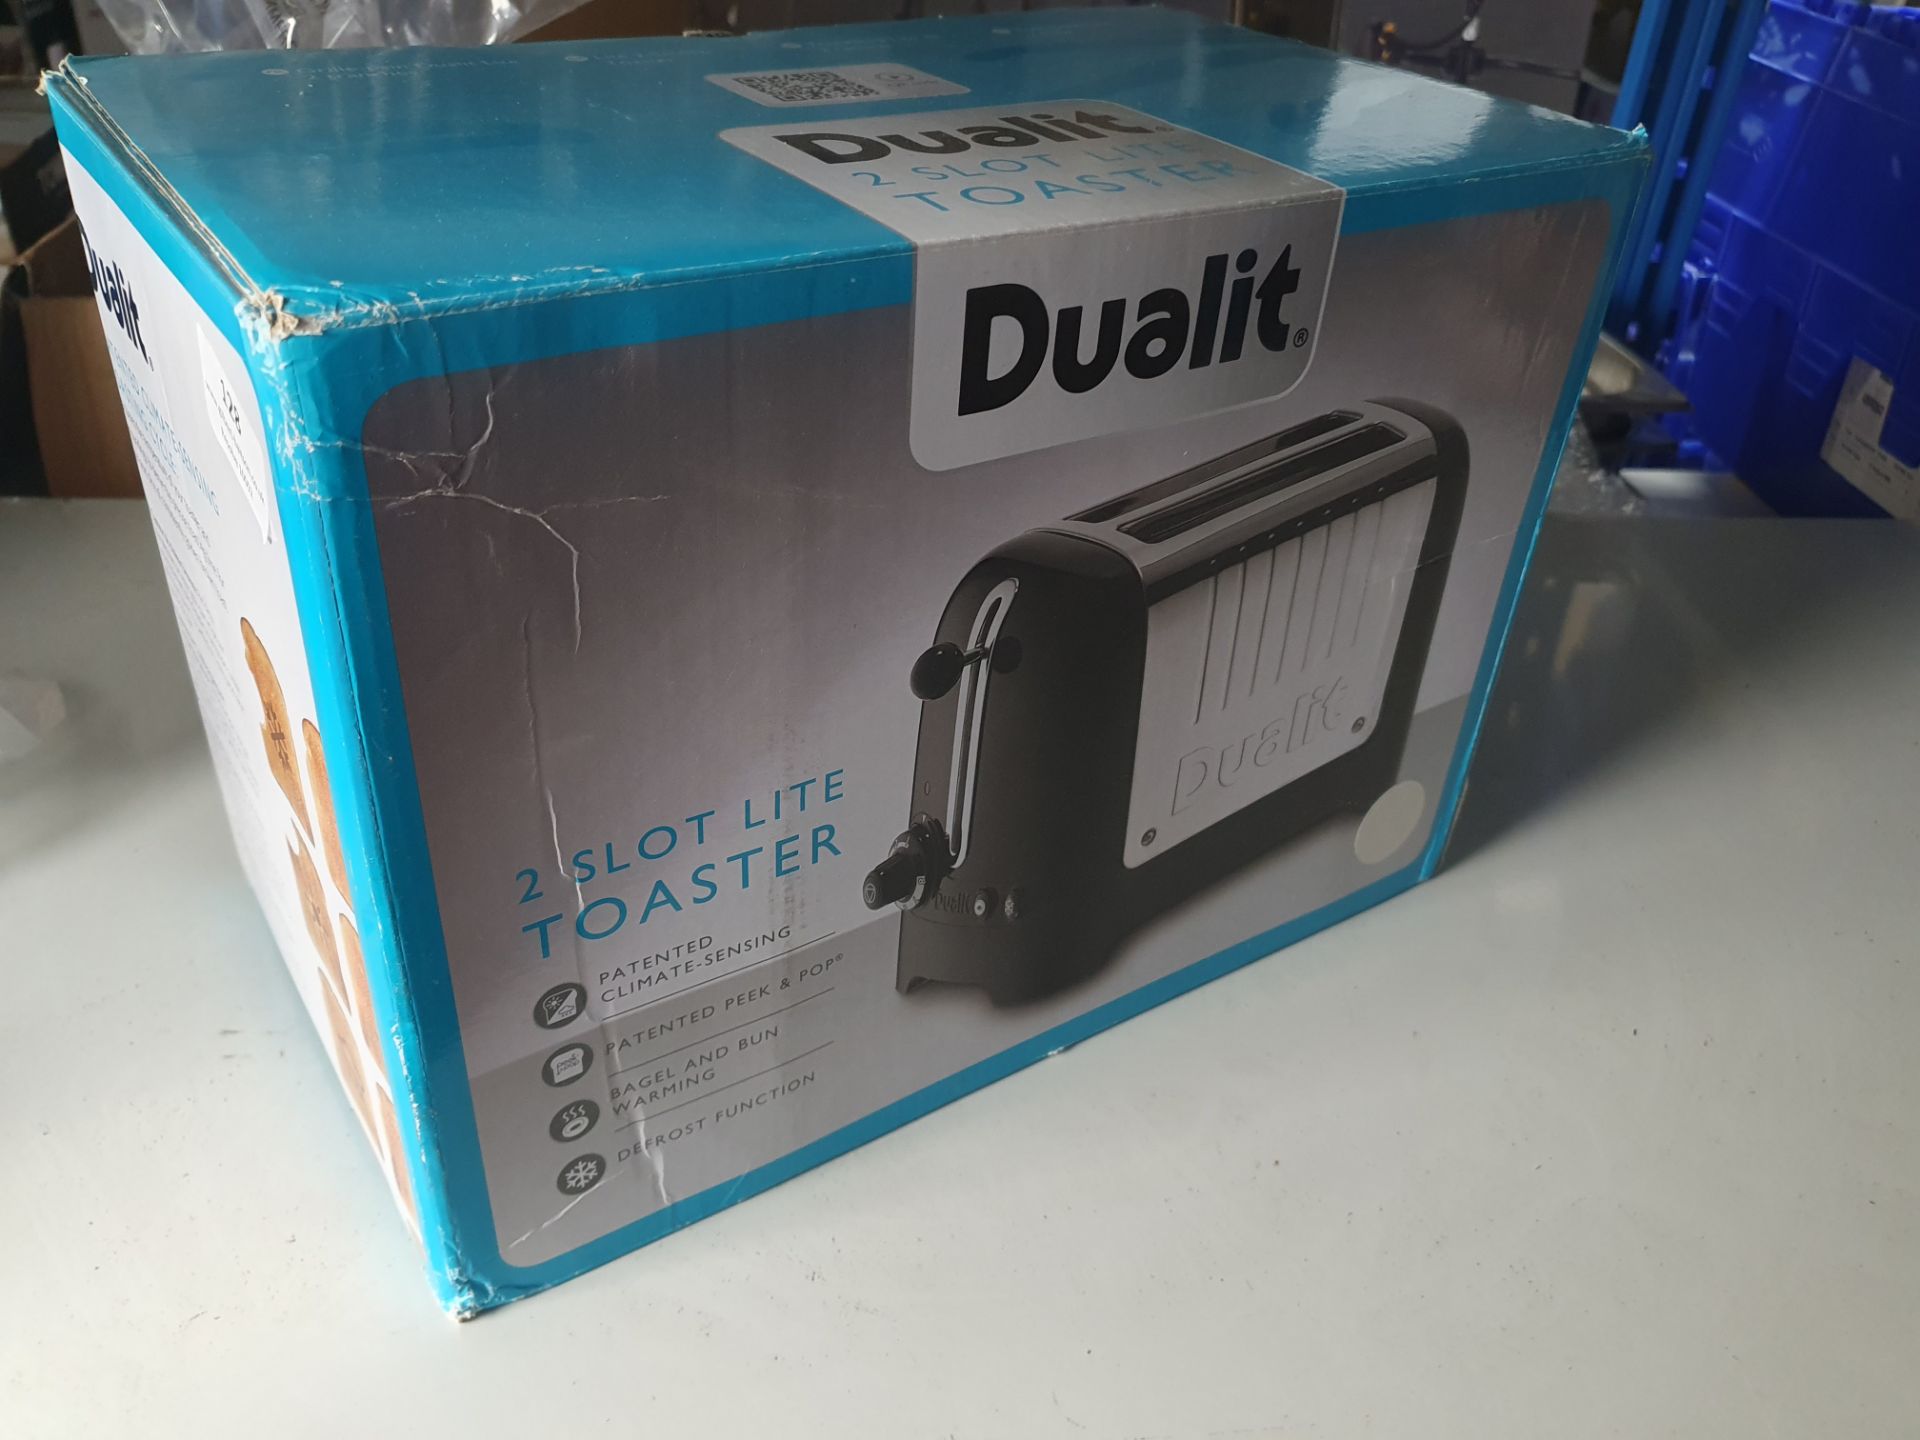 * Dualit 2 slice toaster